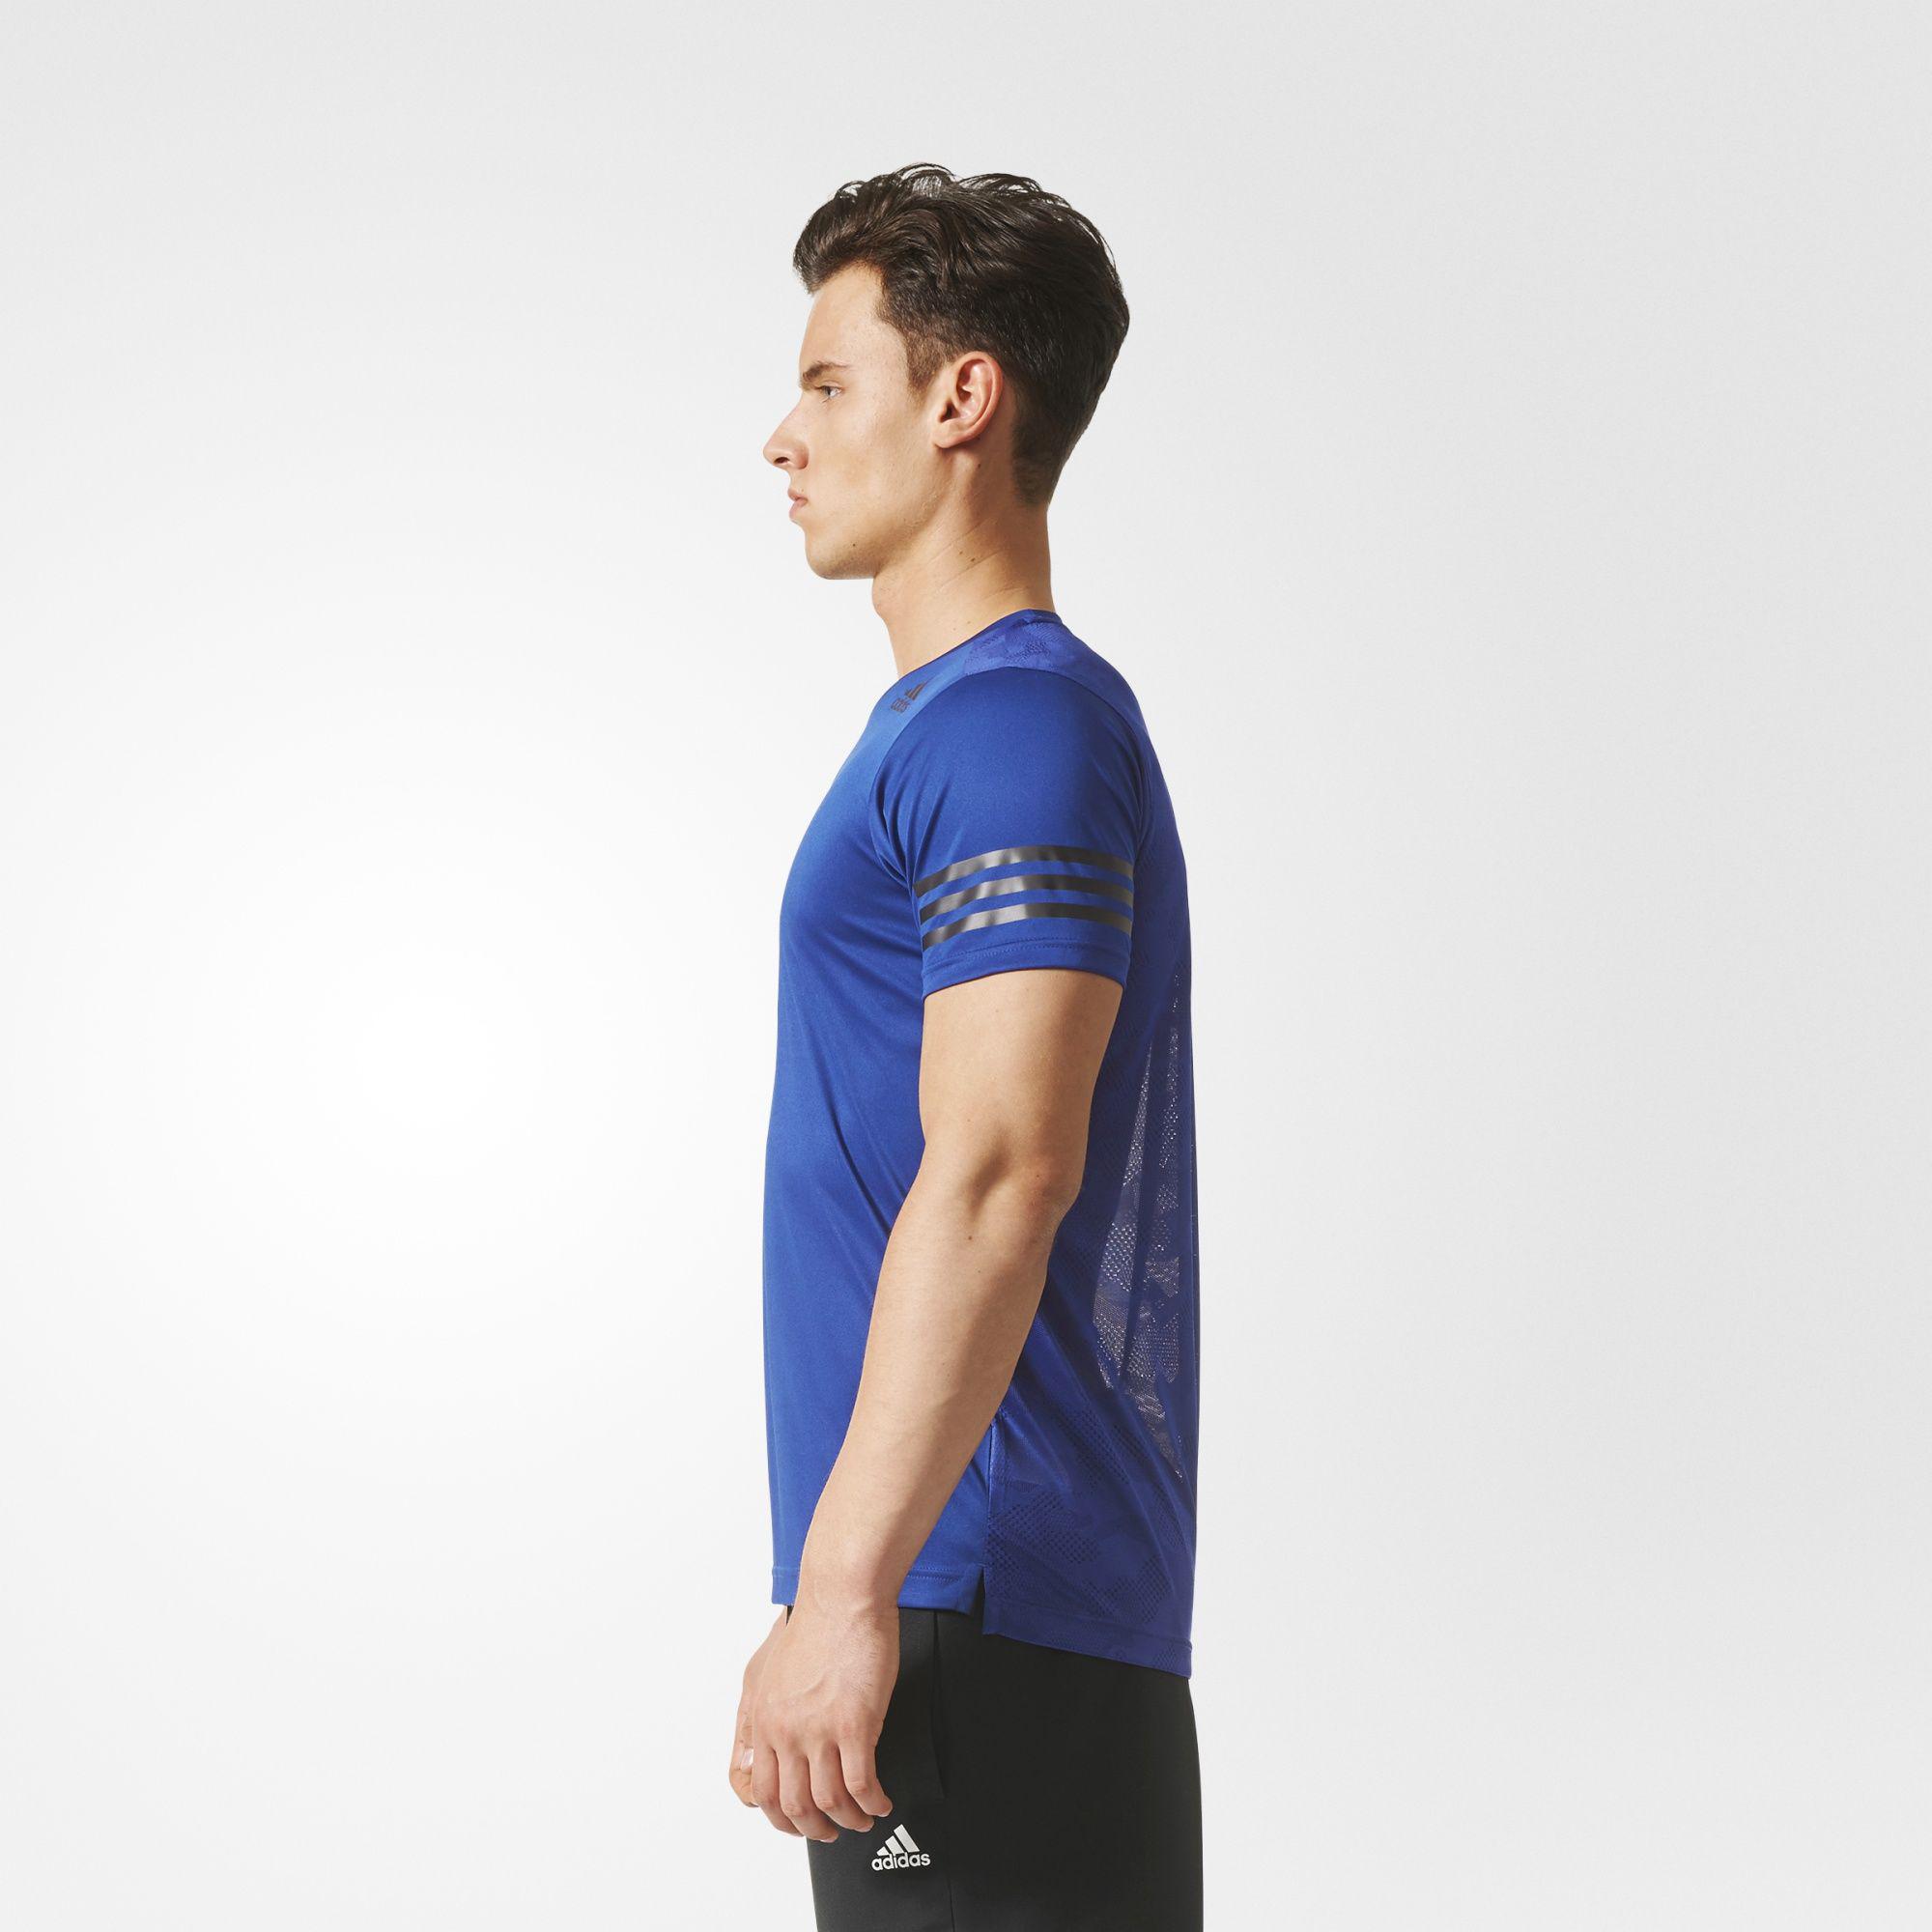 Адидас поет песню. Adidas FREELIFT Climacool Graphics 1 short Sleeve мужская футболка с коротким рукавом.